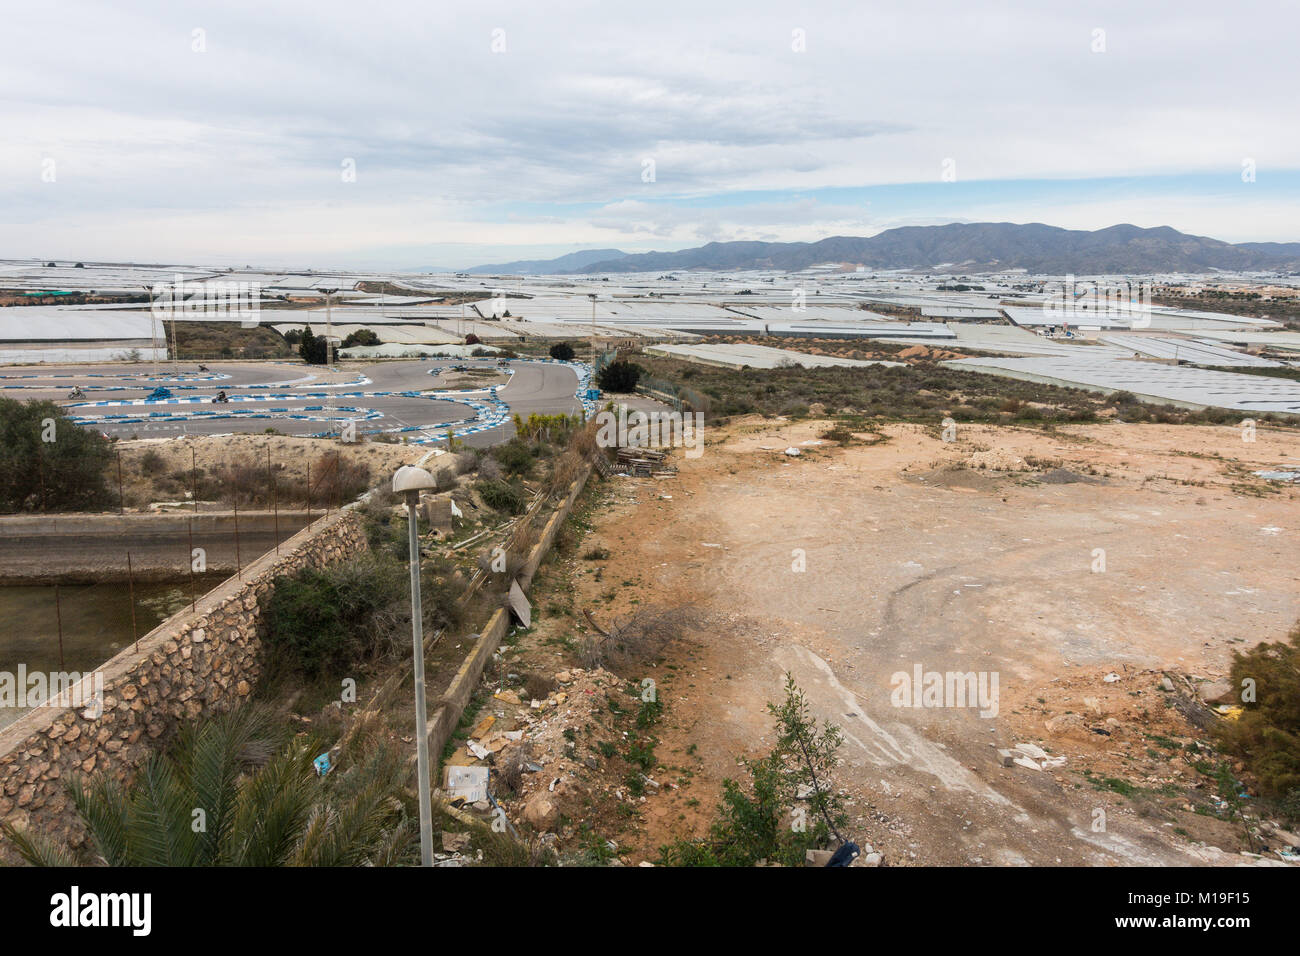 Invernaderos, Kunststoff Gewächshäuser, Treibhäuser für Boden freien Kulturen in Murcia, Spanien. Ein Störfaktor für die Landschaft als Stockfoto